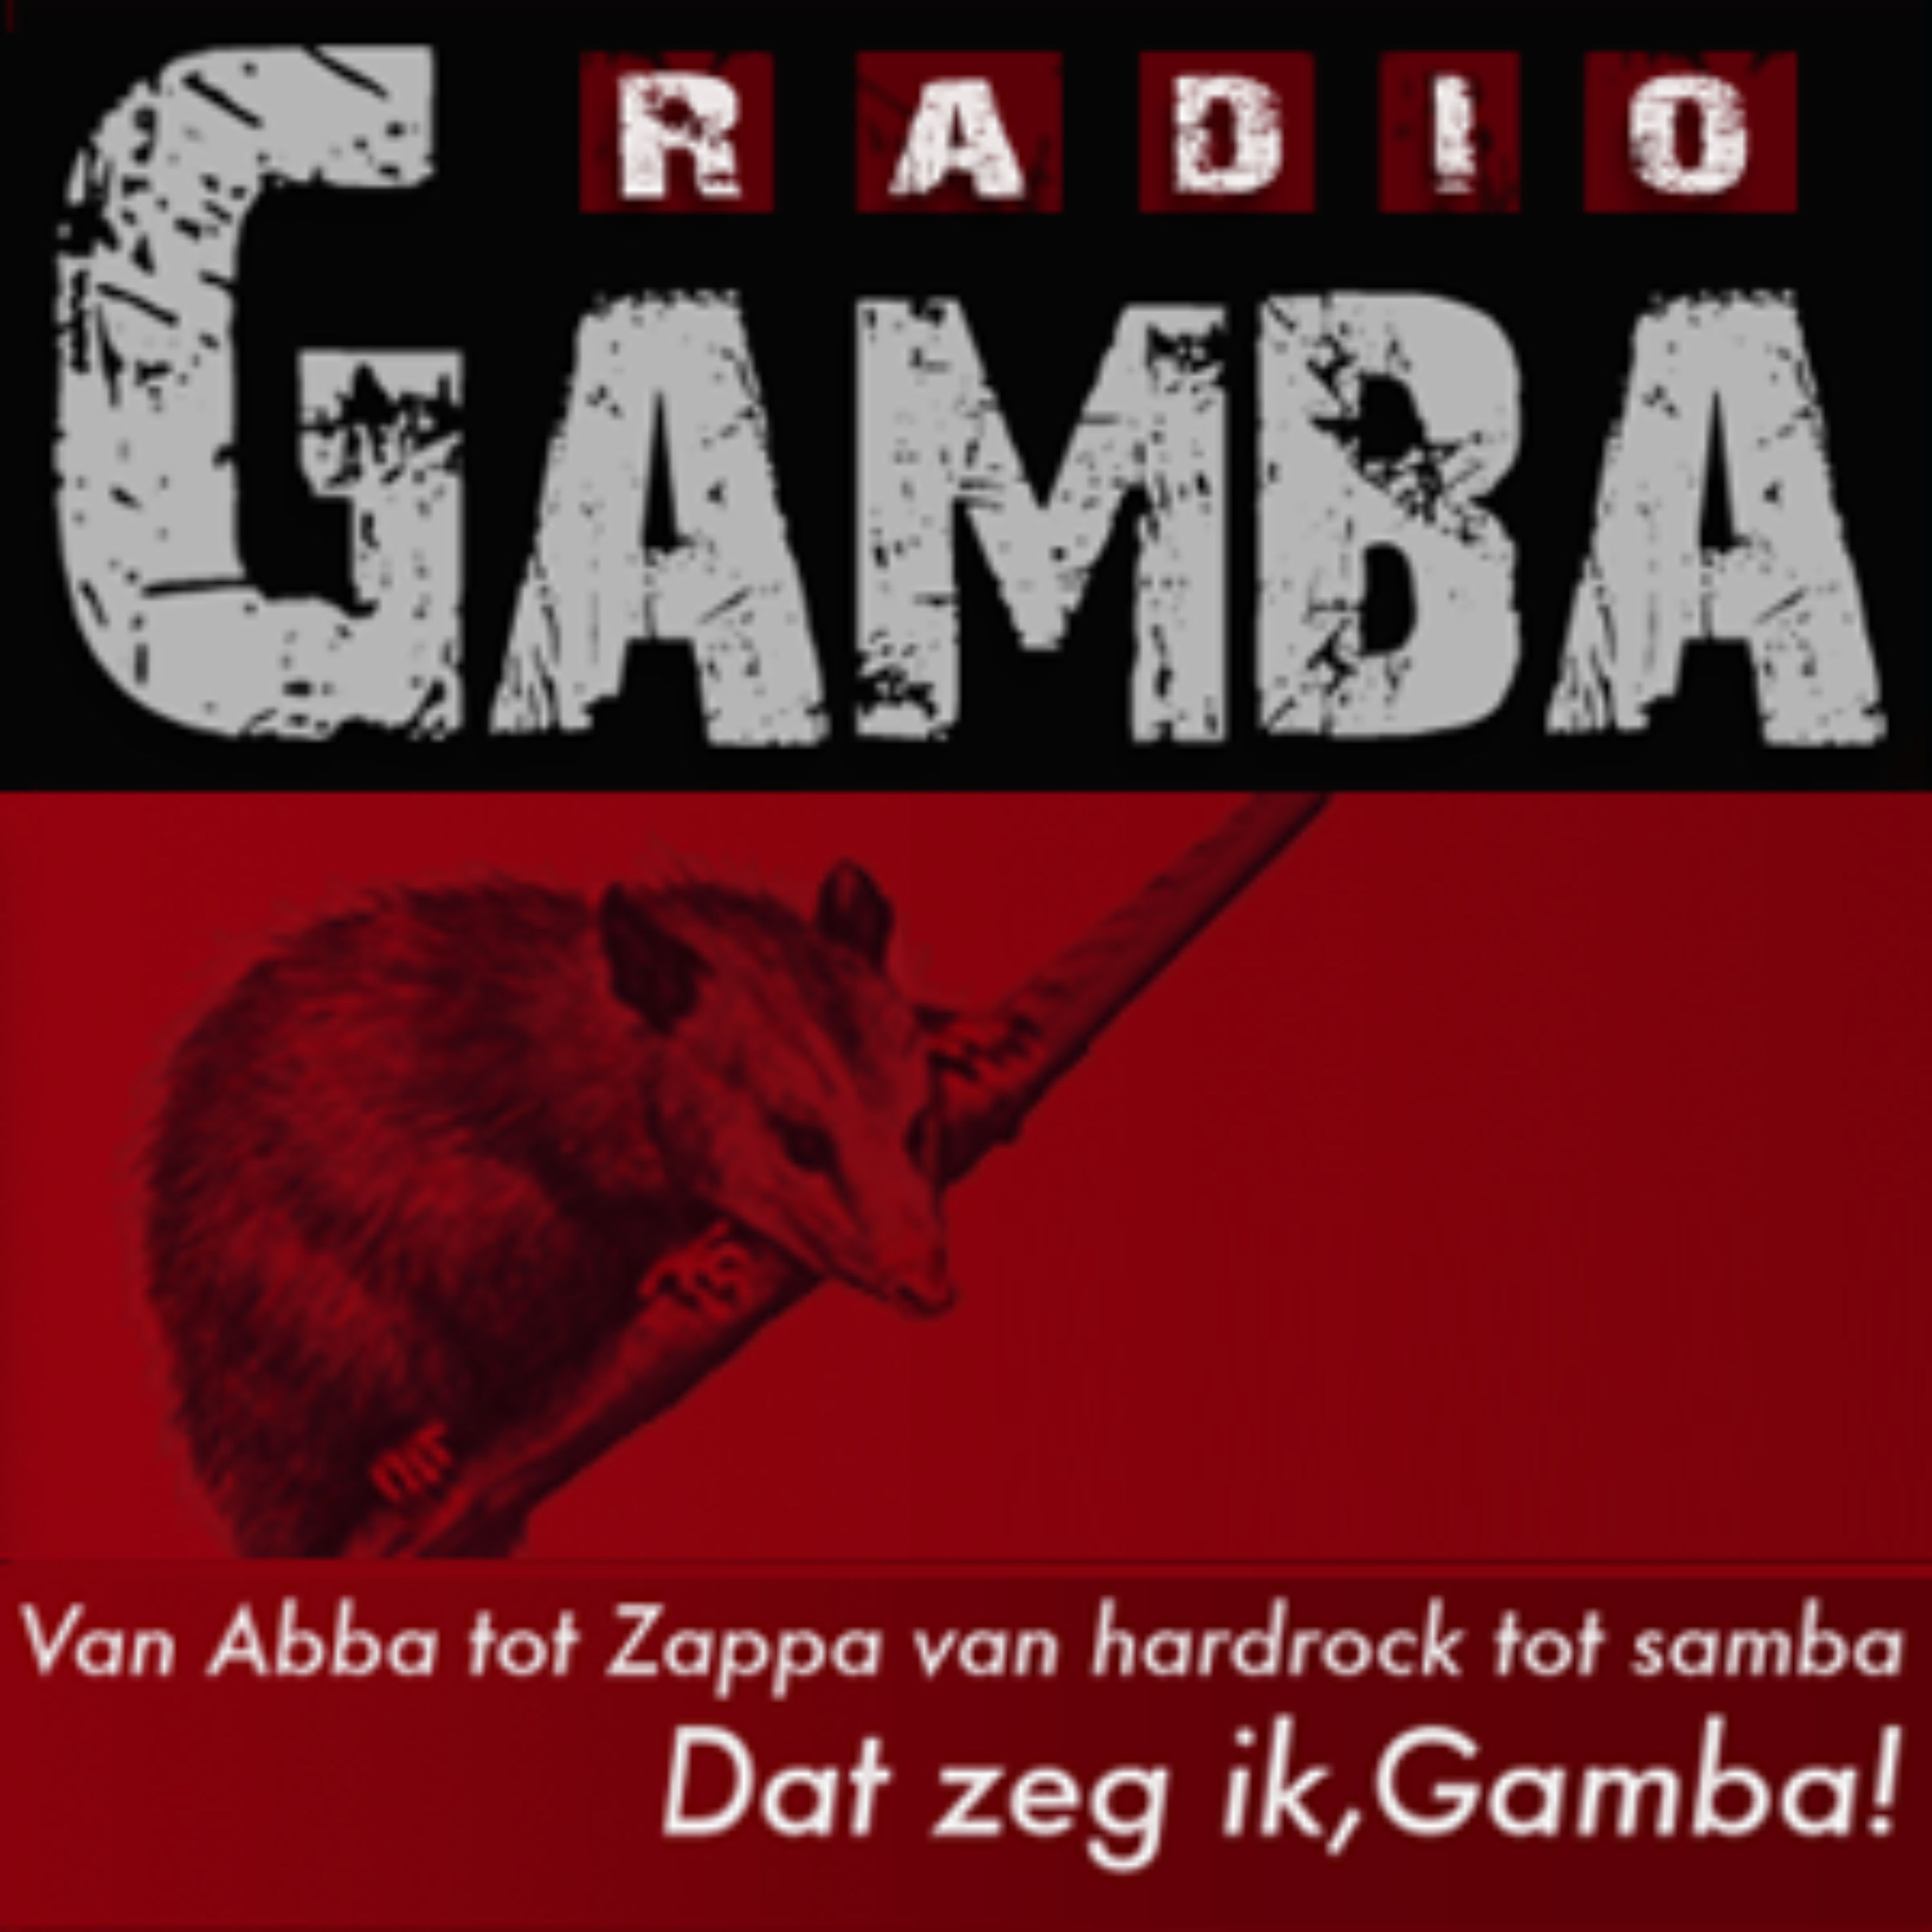 Radio Gamba